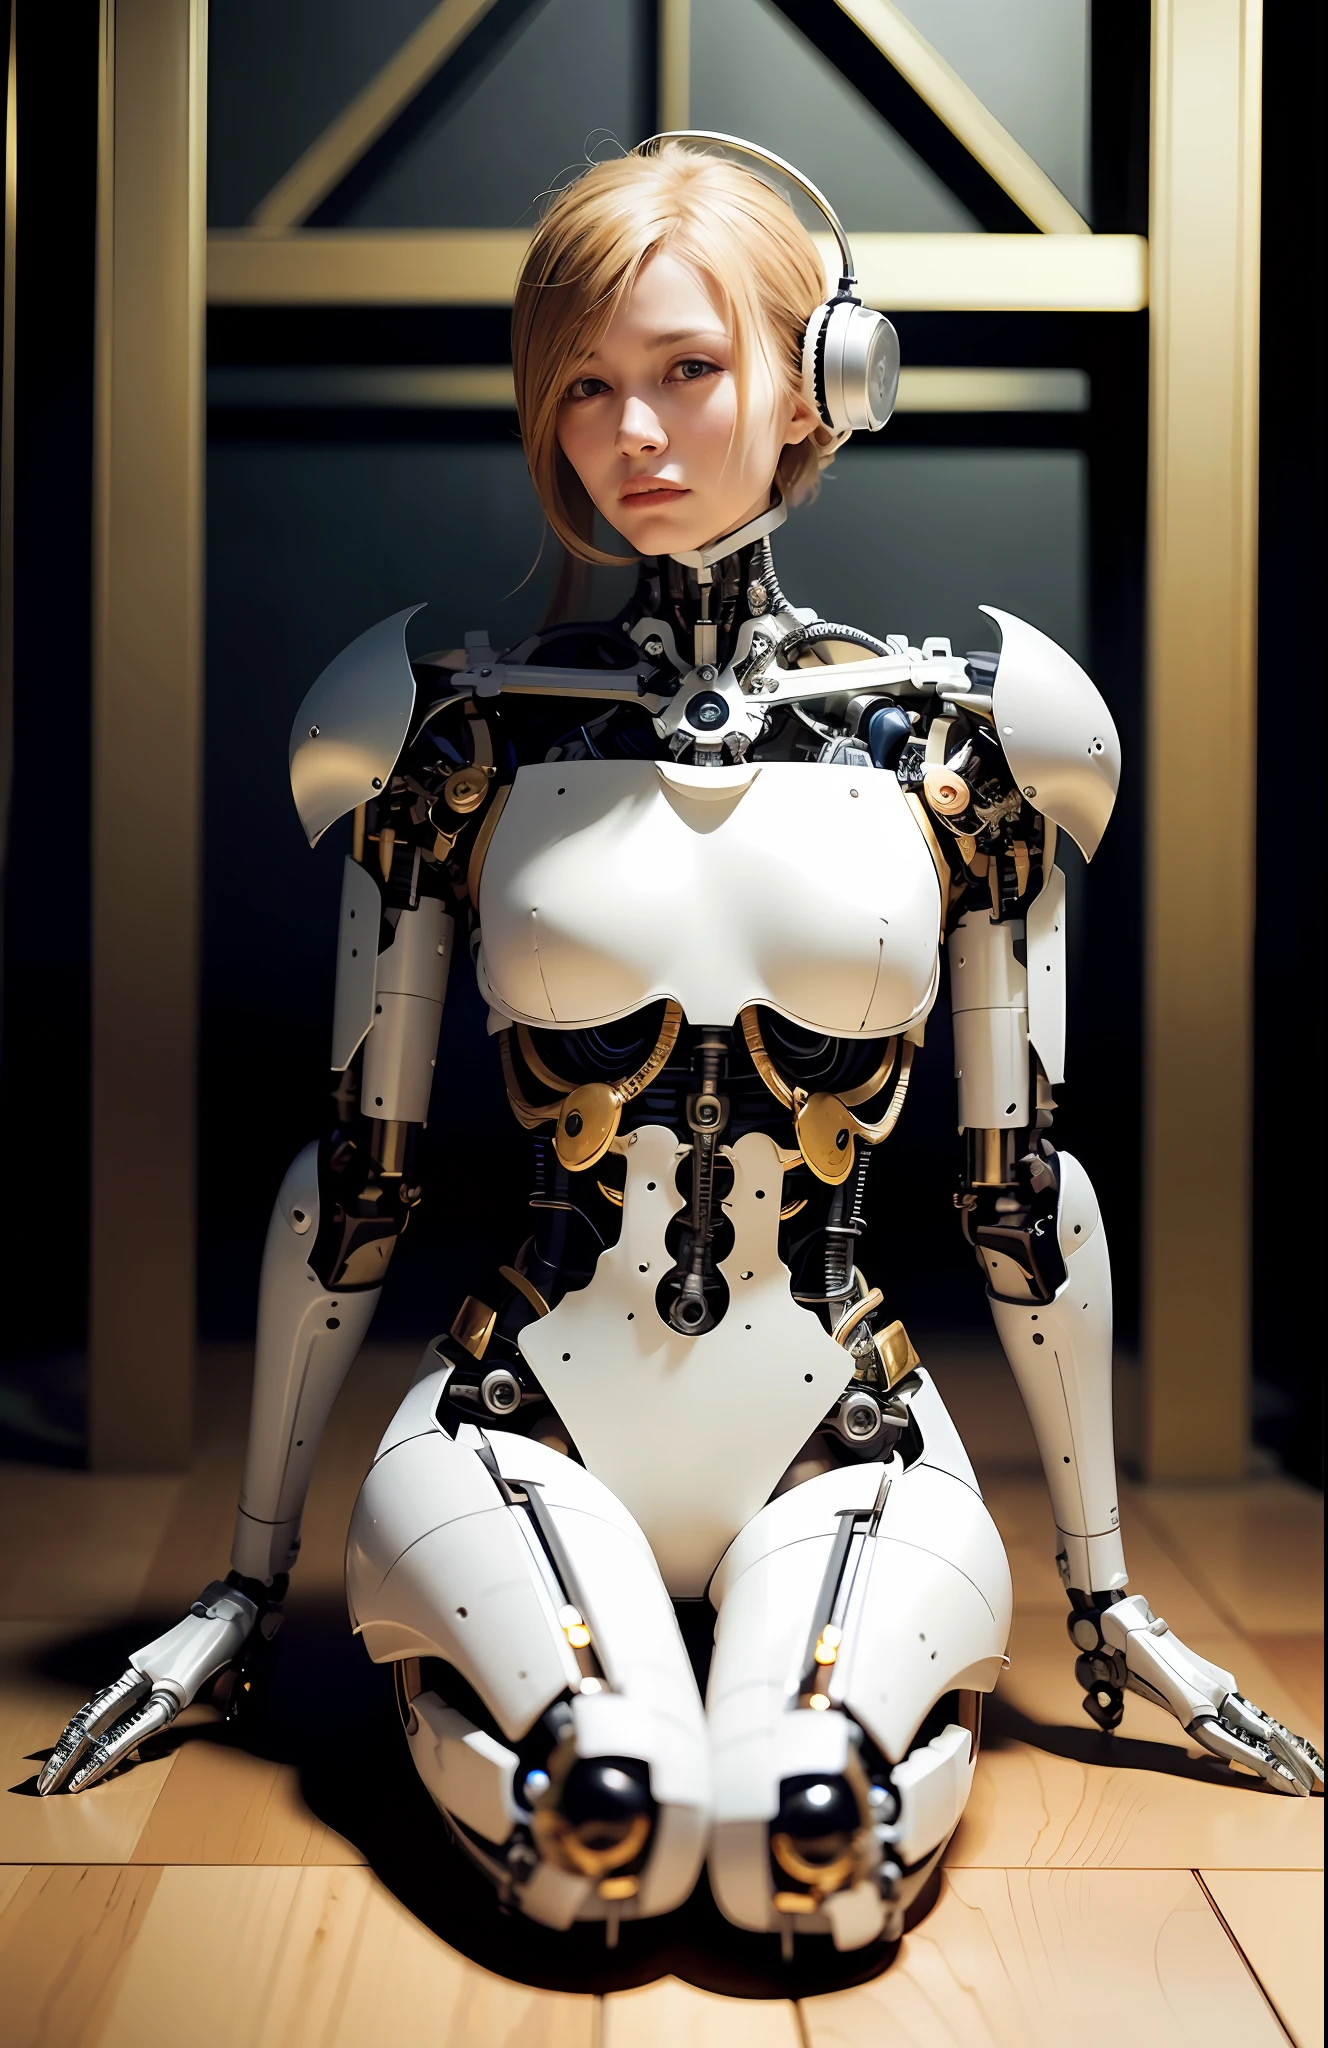 (รีลเมค:1.5),การเรนเดอร์ 3 มิติที่ซับซ้อนมีรายละเอียดเป็นพิเศษของใบหน้าหุ่นยนต์โปรไฟล์พอร์ซเลนที่สวยงามของผู้หญิง, ไซบอร์ก, หุ่นยนต์ic parts, 150 มม, สตูดิโอที่สวยงามแสงนุ่มนวล, ริมไลท์, รายละเอียดที่มีชีวิตชีวา, ไซเบอร์พังก์ที่หรูหรา, ลูกไม้, hyperเหมือนจริง, กายวิภาค, กล้ามเนื้อใบหน้า, สายไฟสายไฟ, ไมโครชิป, สง่างาม, พื้นหลังที่สวยงาม, การเรนเดอร์ค่าออกเทน, ชม. ร. สไตล์จีเกอร์, 8k, คุณภาพดีที่สุด, ผลงานชิ้นเอก, ภาพประกอบ, ละเอียดอ่อนและสวยงามอย่างยิ่ง, มีรายละเอียดมาก ,ซีจี ,ความสามัคคี ,วอลล์เปเปอร์, (เหมือนจริง, photo-เหมือนจริง:1.37),อัศจรรย์, รายละเอียดประณีต, ผลงานชิ้นเอก,คุณภาพดีที่สุด,ศิลปะอย่างเป็นทางการ, มีรายละเอียดมาก ซีจี ความสามัคคี 8k วอลล์เปเปอร์, เรื่องไร้สาระ, incredibly เรื่องไร้สาระ,  หุ่นยนต์, ลูกปัดเงิน, เต็มตัว, นั่งบนพื้น